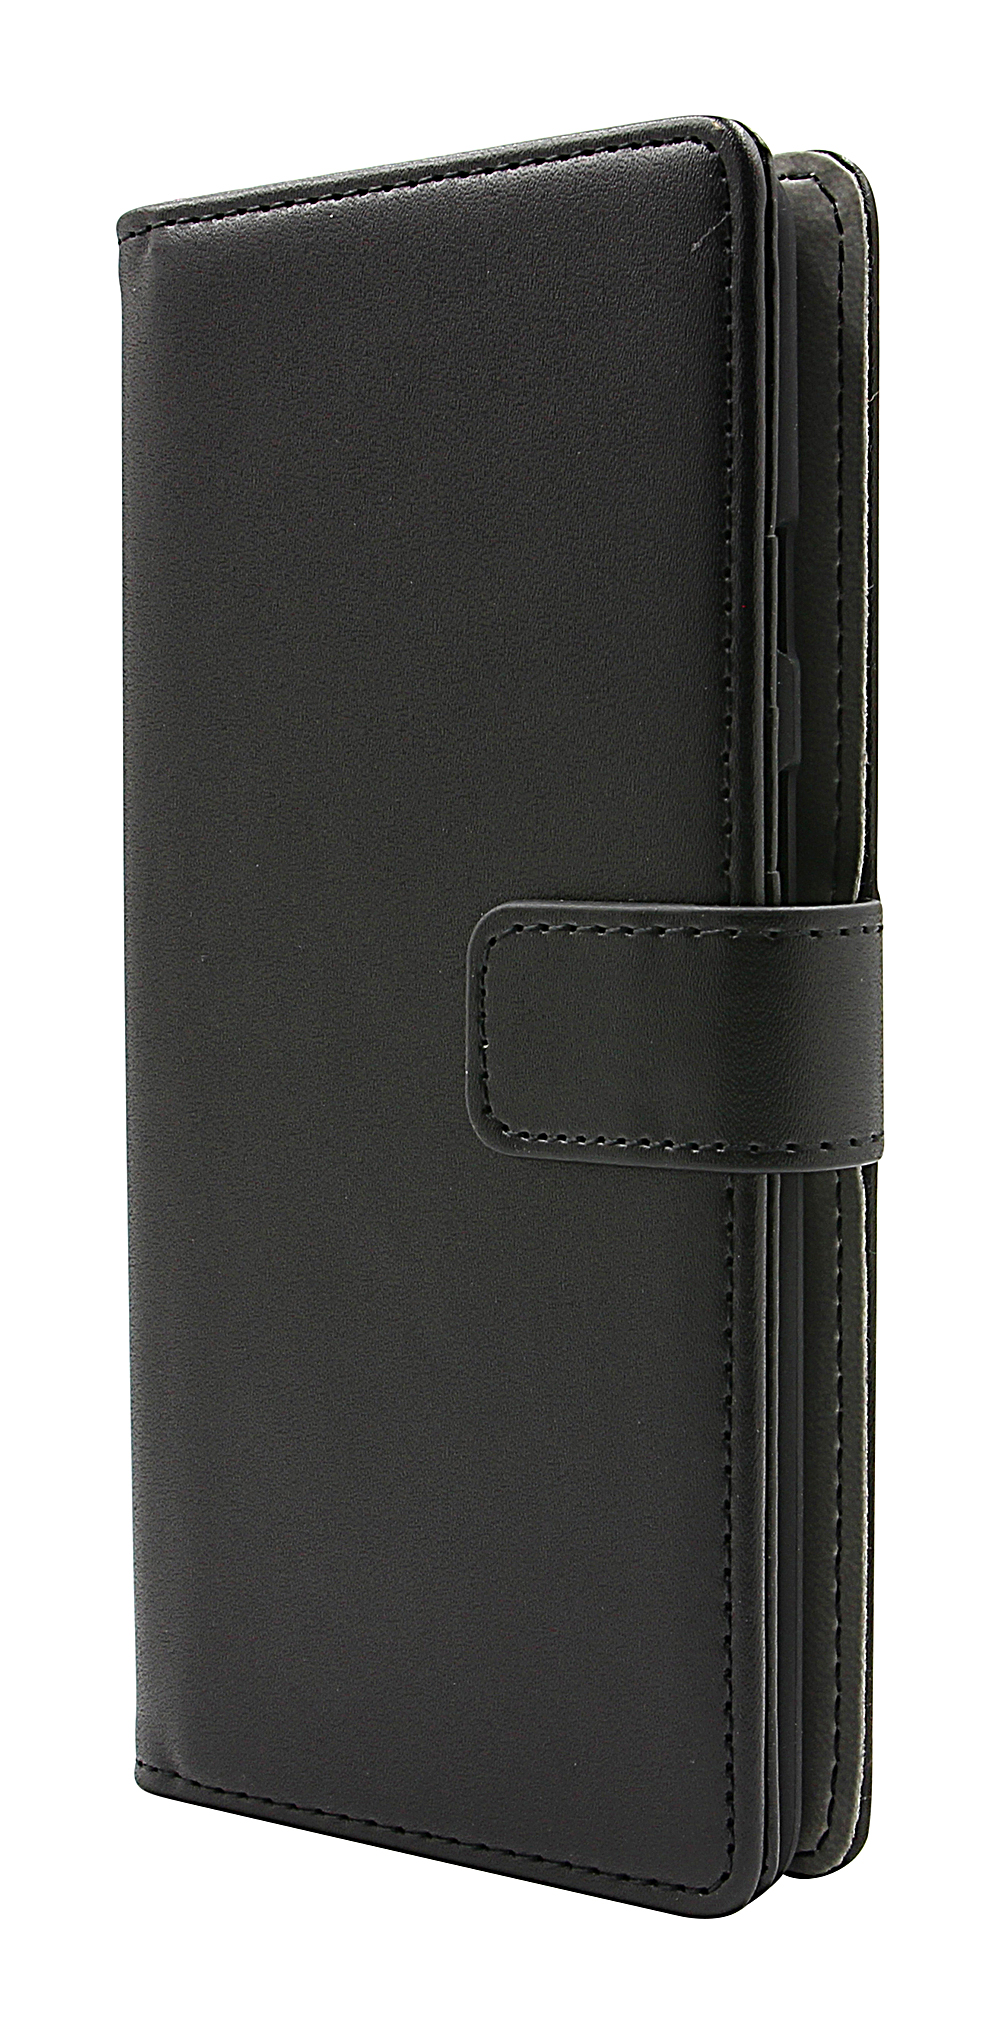 CoverIn Skimblocker Magneettikotelo OnePlus 7T